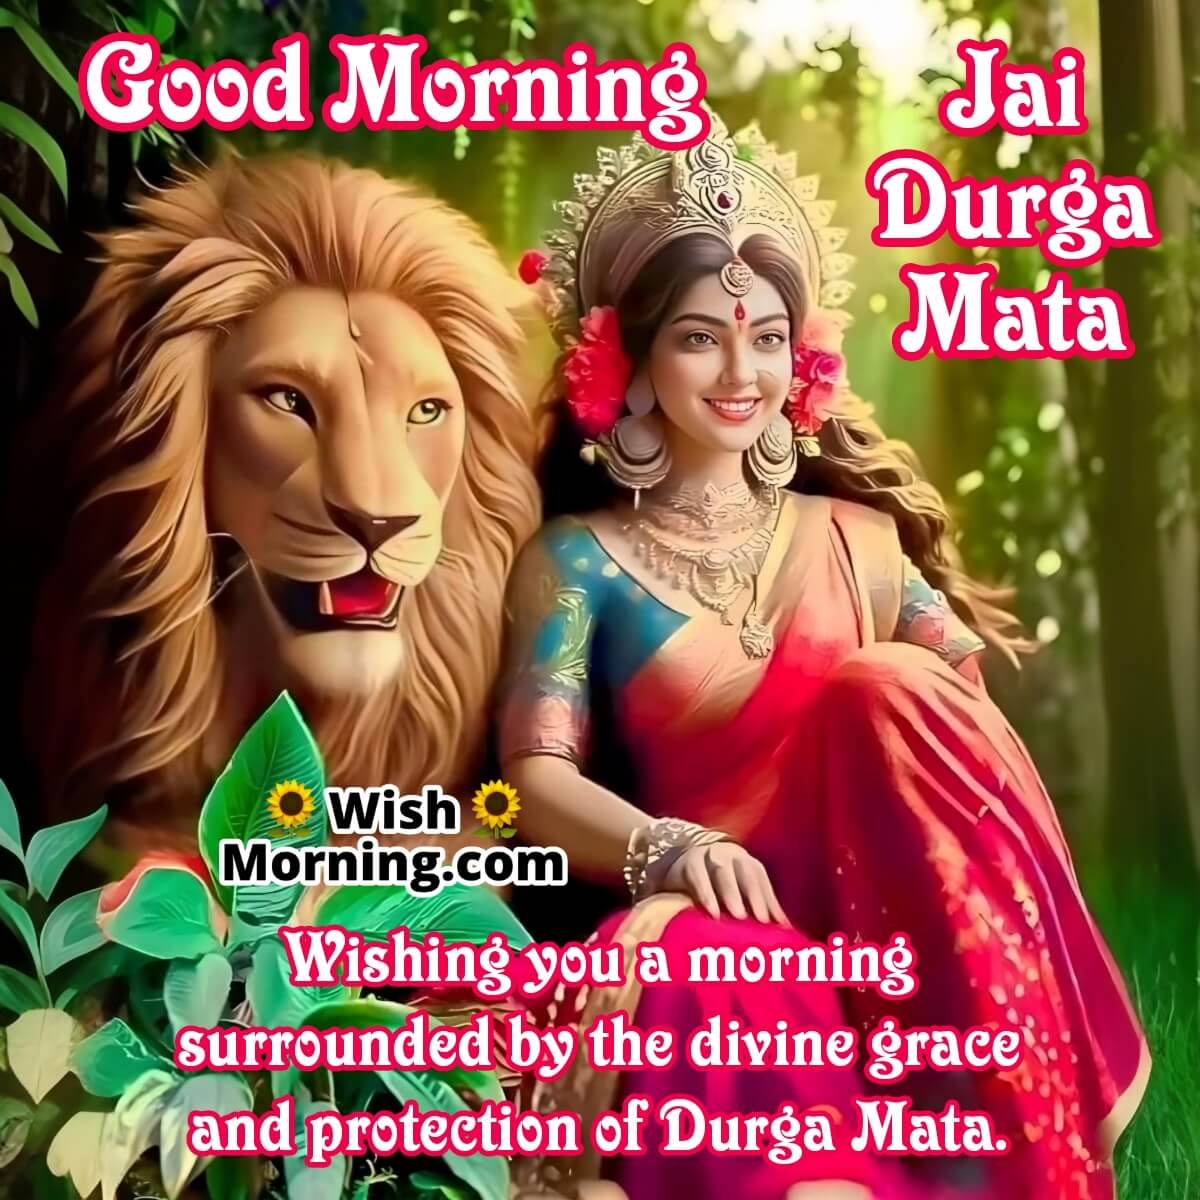 Good Morning Durga Mata Images